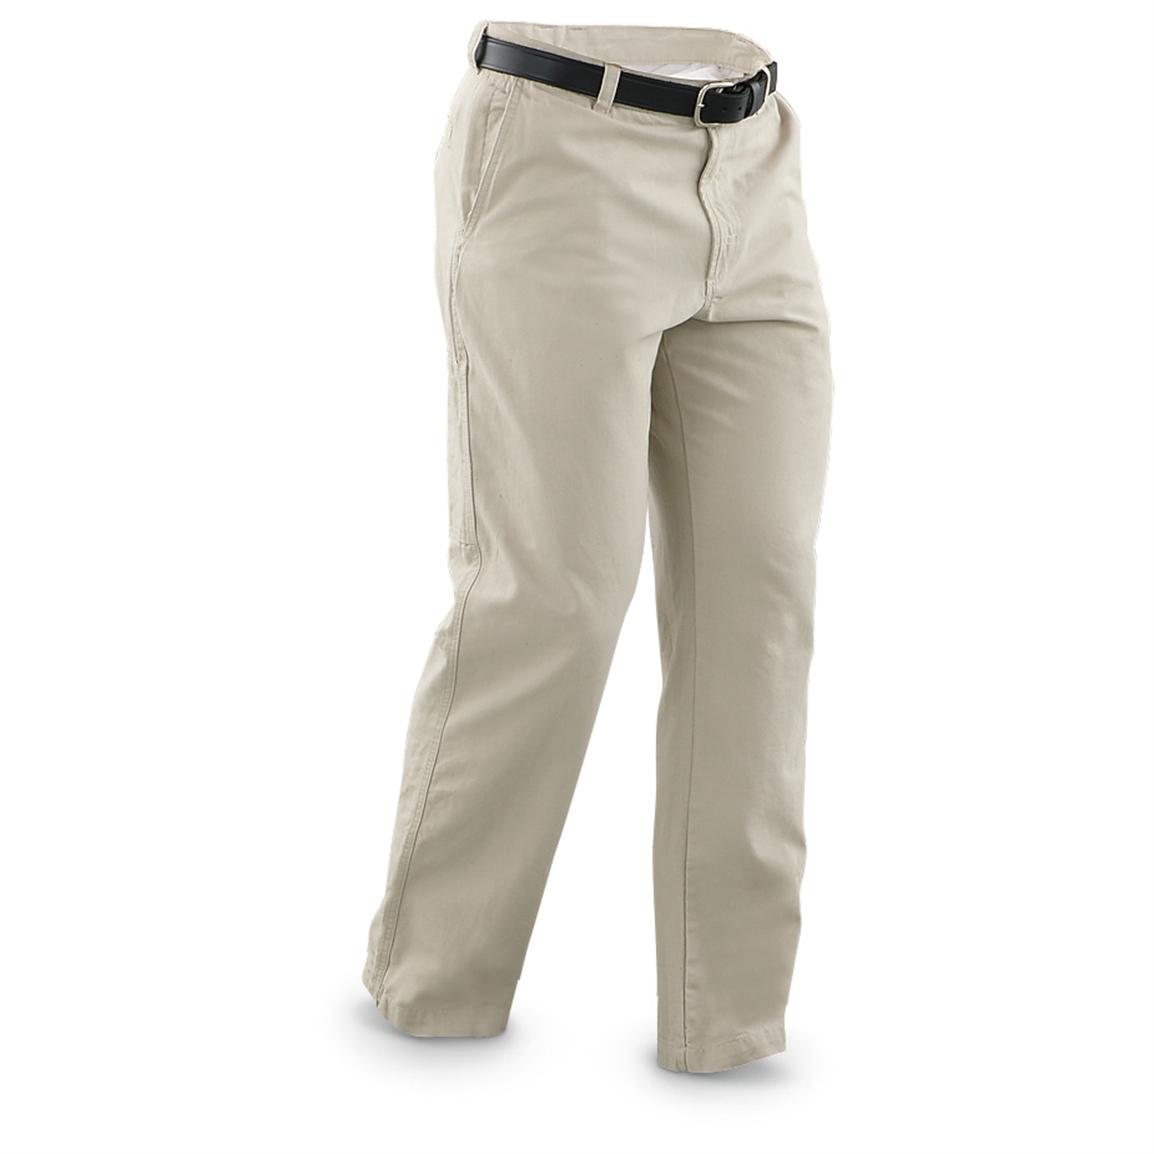 Columbia Men's ROC Pants - 285049, Jeans & Pants at Sportsman's Guide